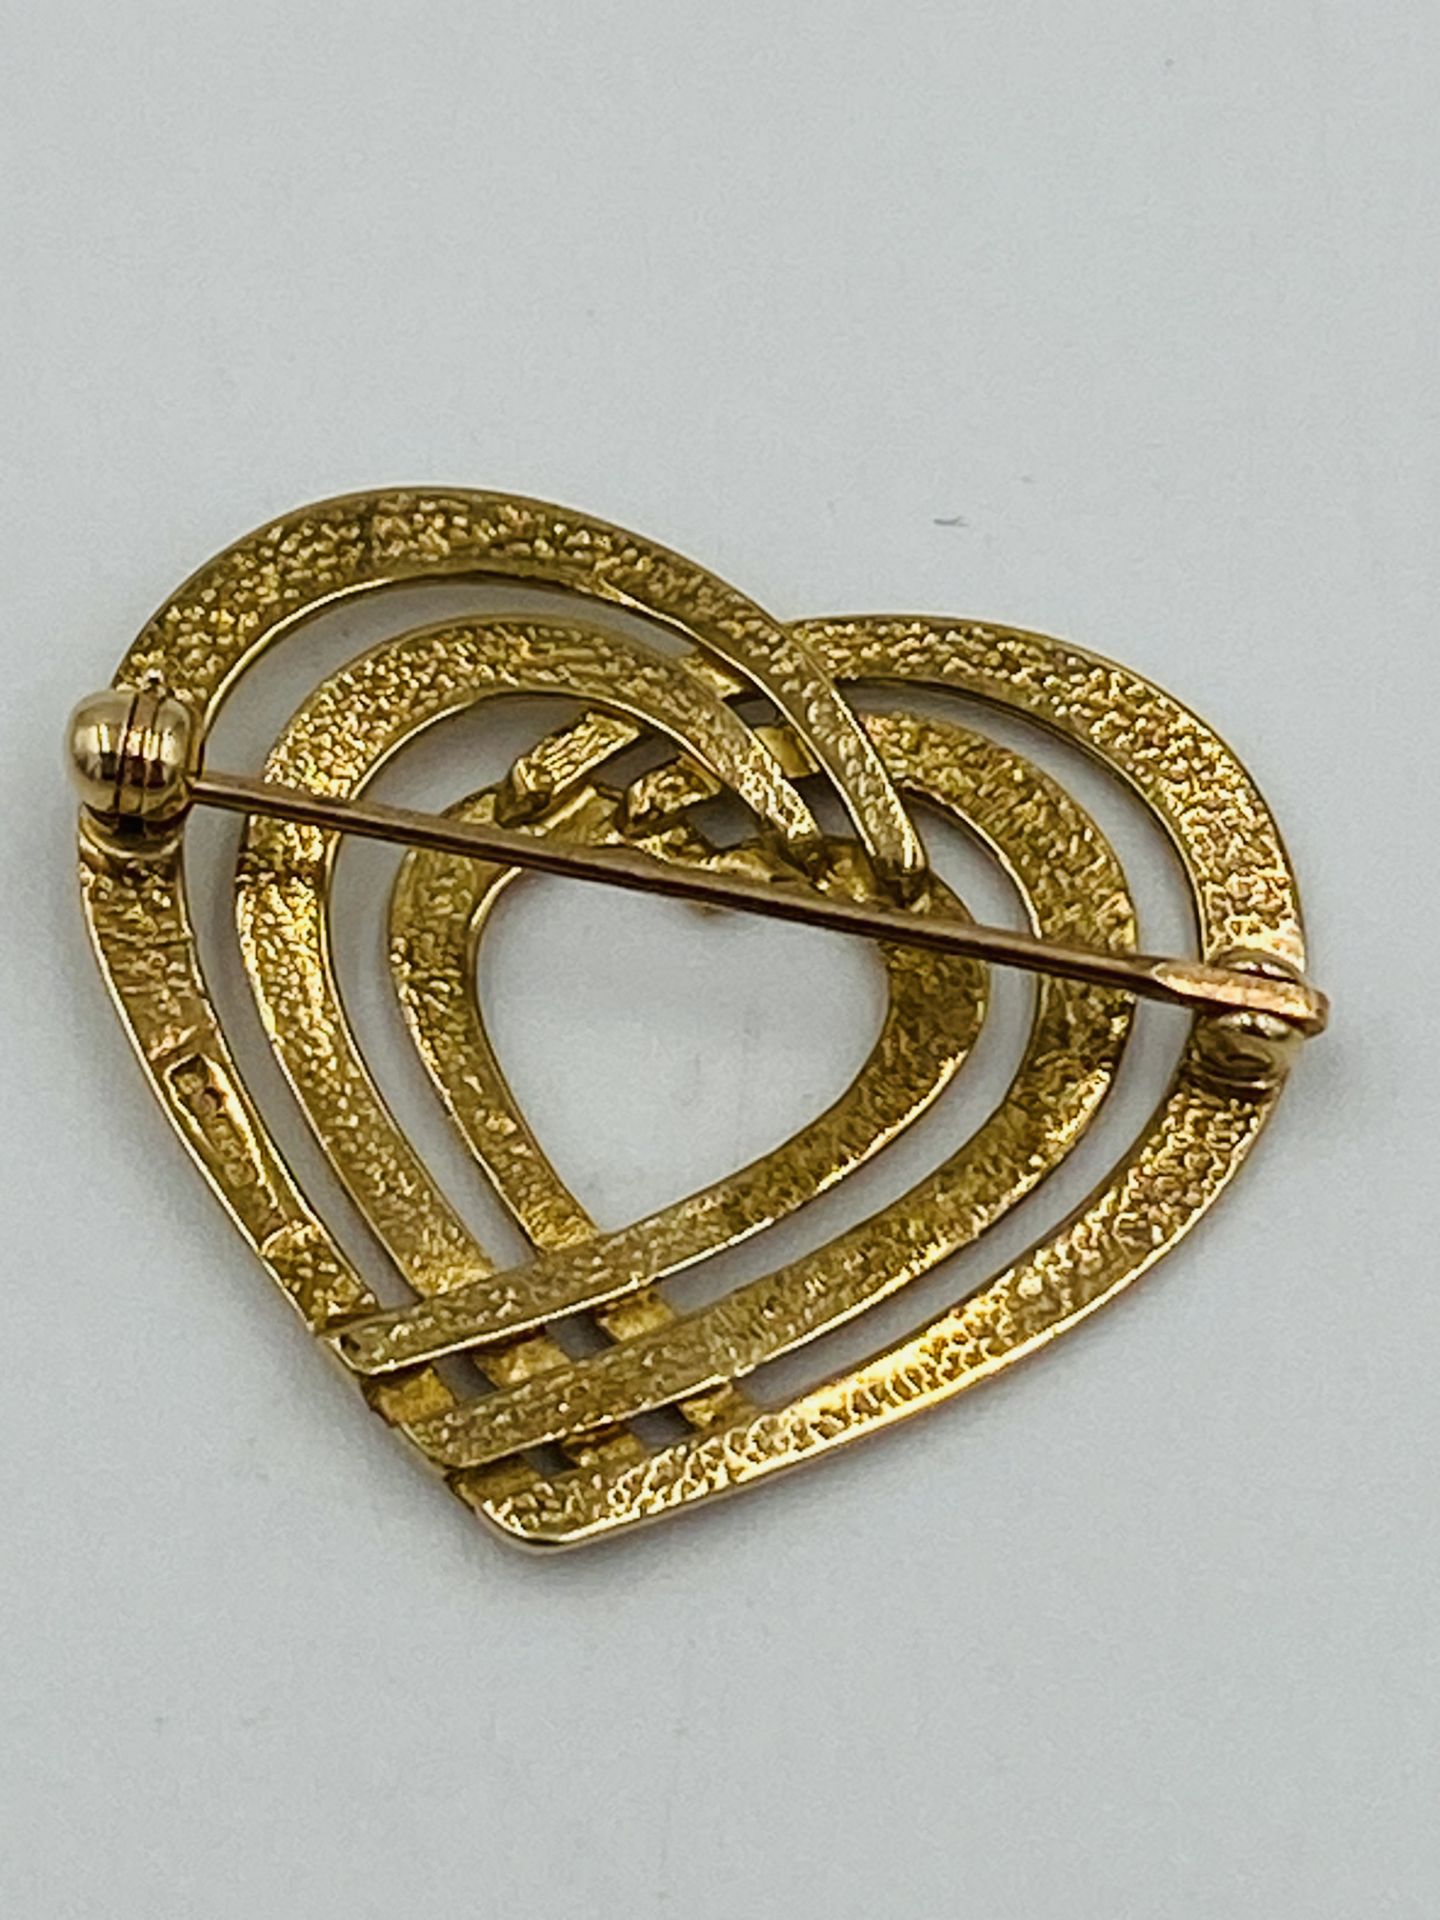 9ct gold heart shaped brooch - Bild 3 aus 4